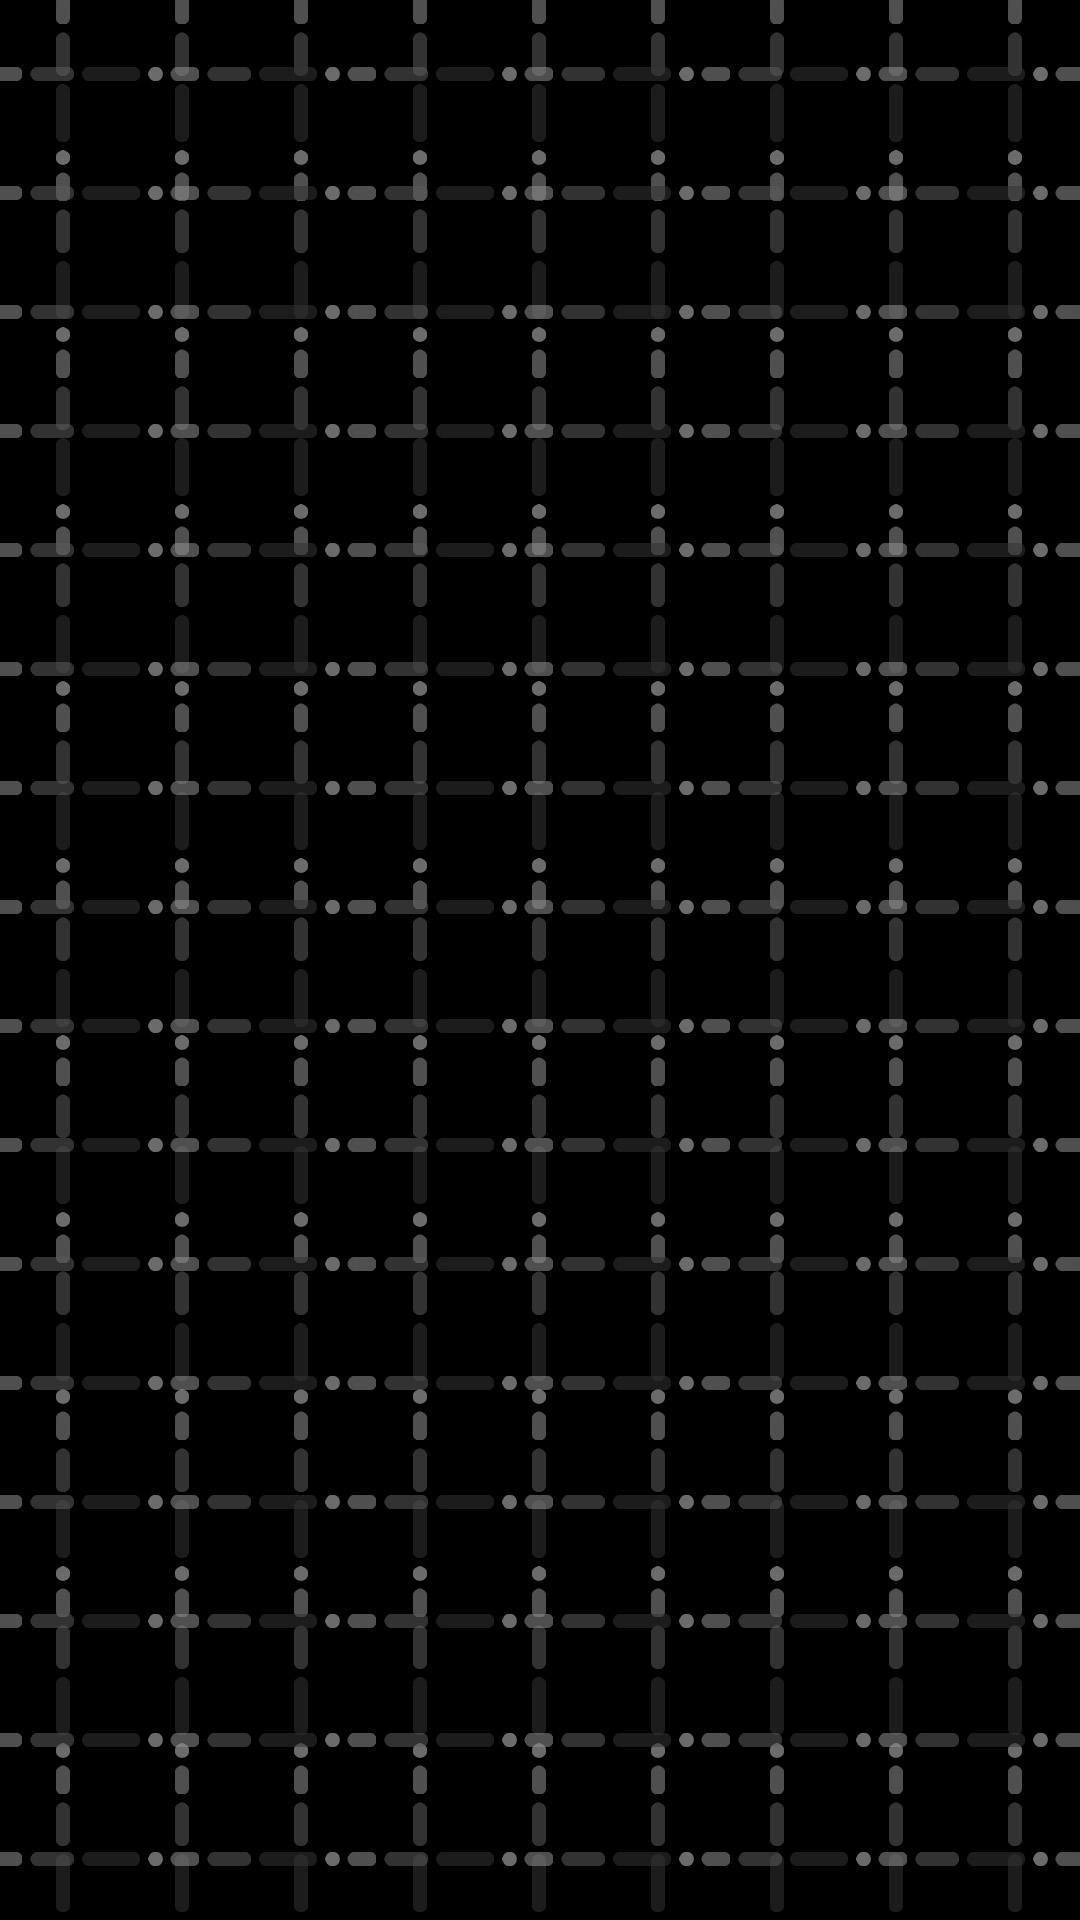 black grid wallpaper full hd for mobile